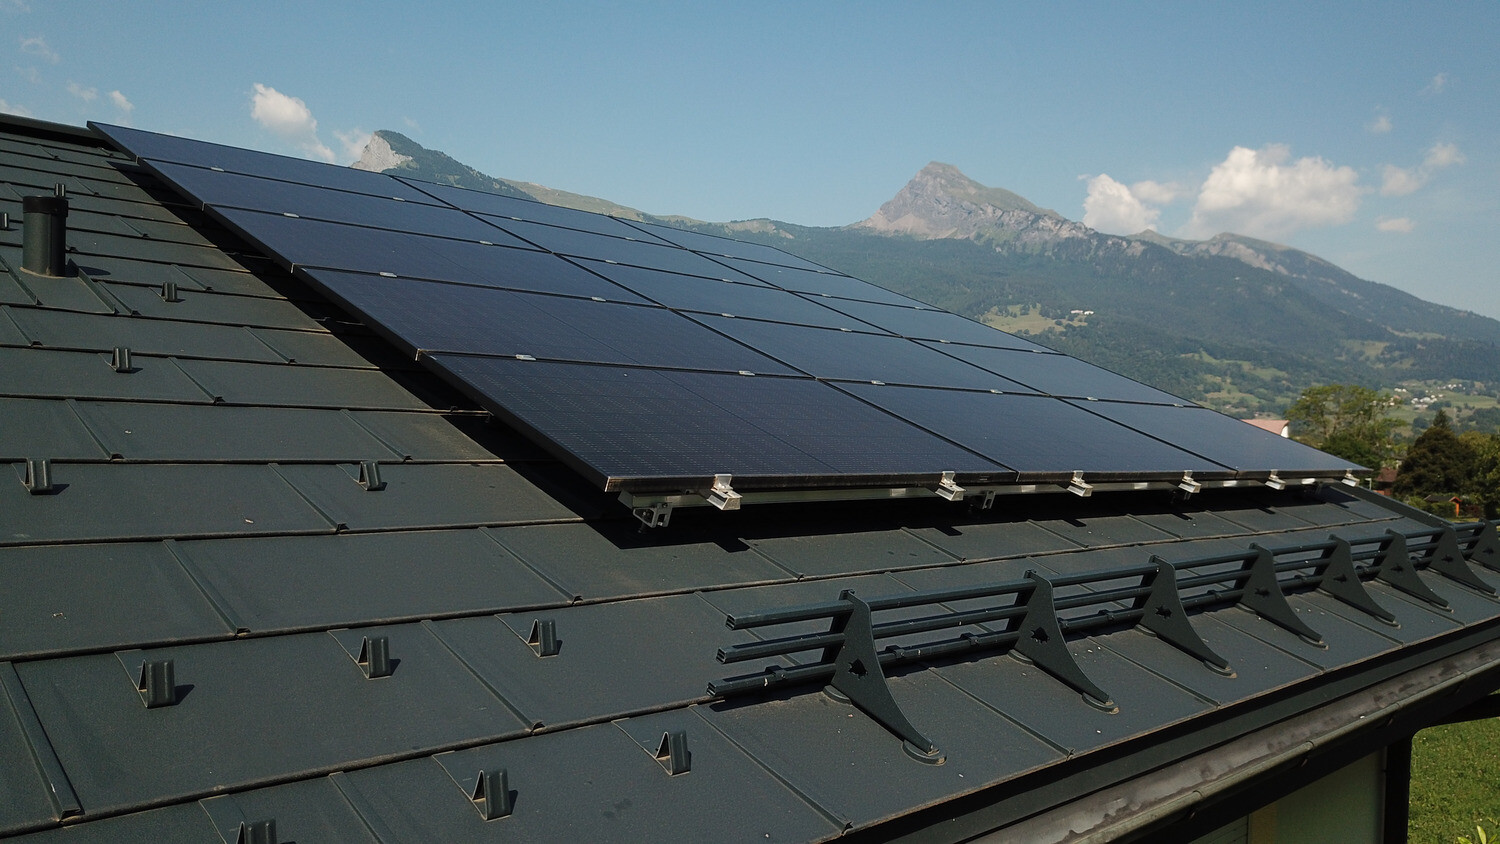 Installation photovoltaïque sur une toiture PREFA constituée de tuiles R.16 en anthracite.